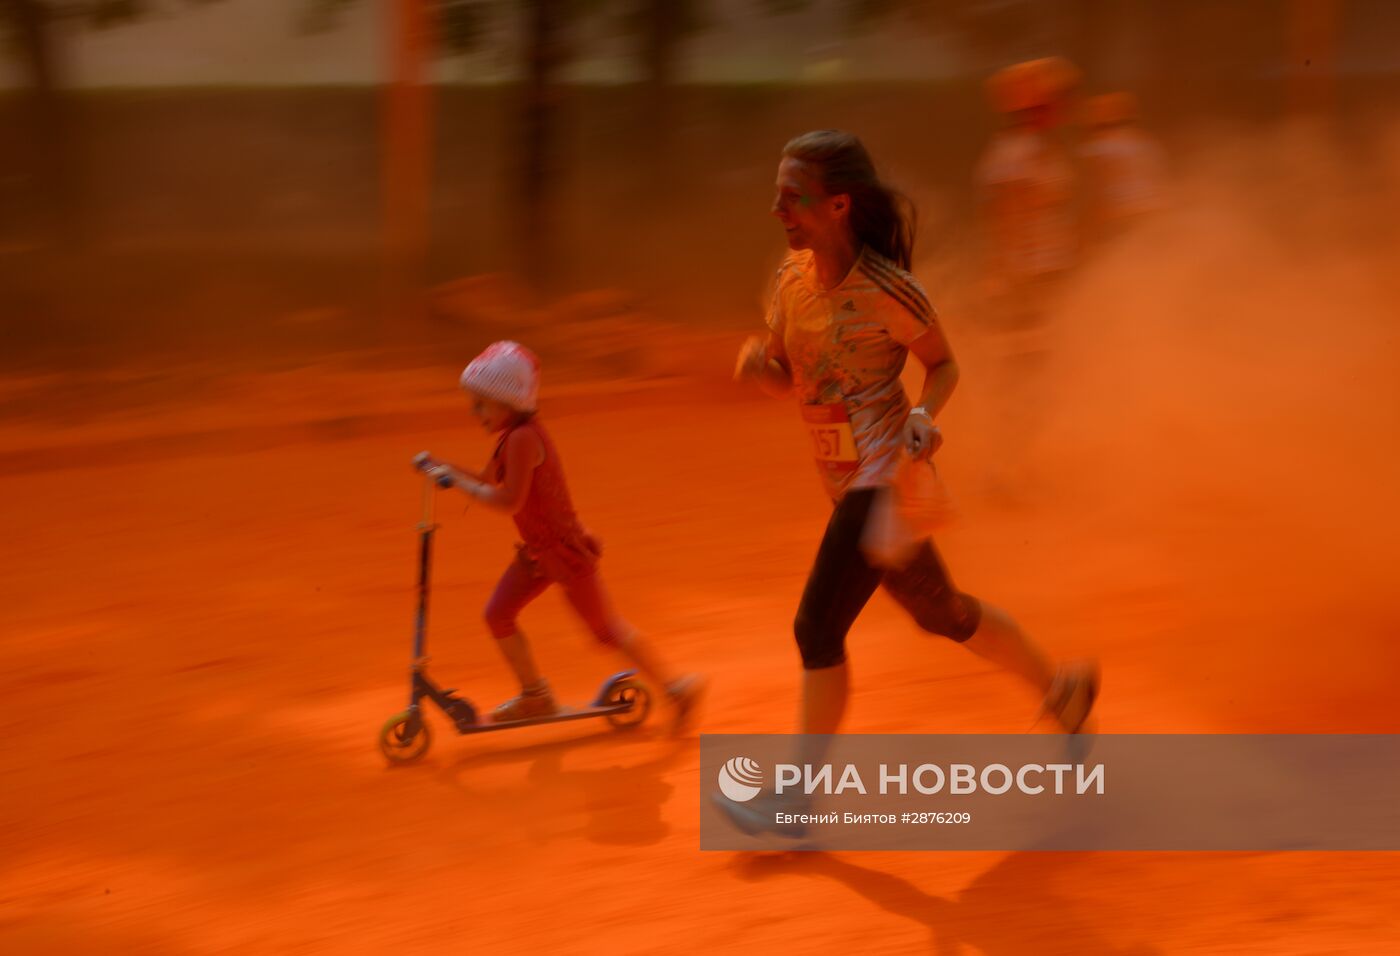 Красочный забег в Москве